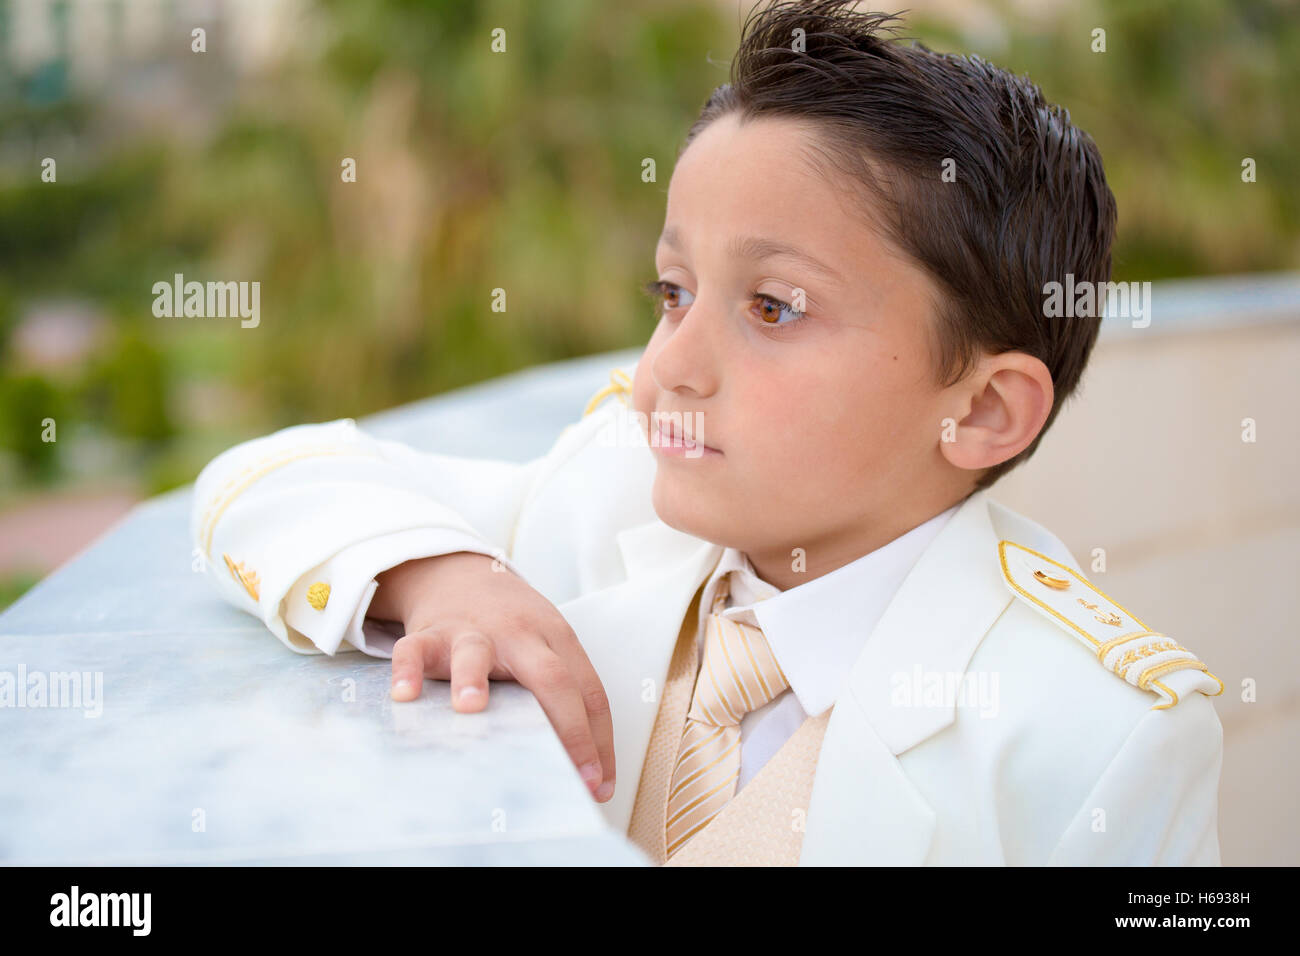 Jeune garçon avec costume blanc s'appuyant sur un mur dans sa Première Communion. Profondeur de champ. Banque D'Images